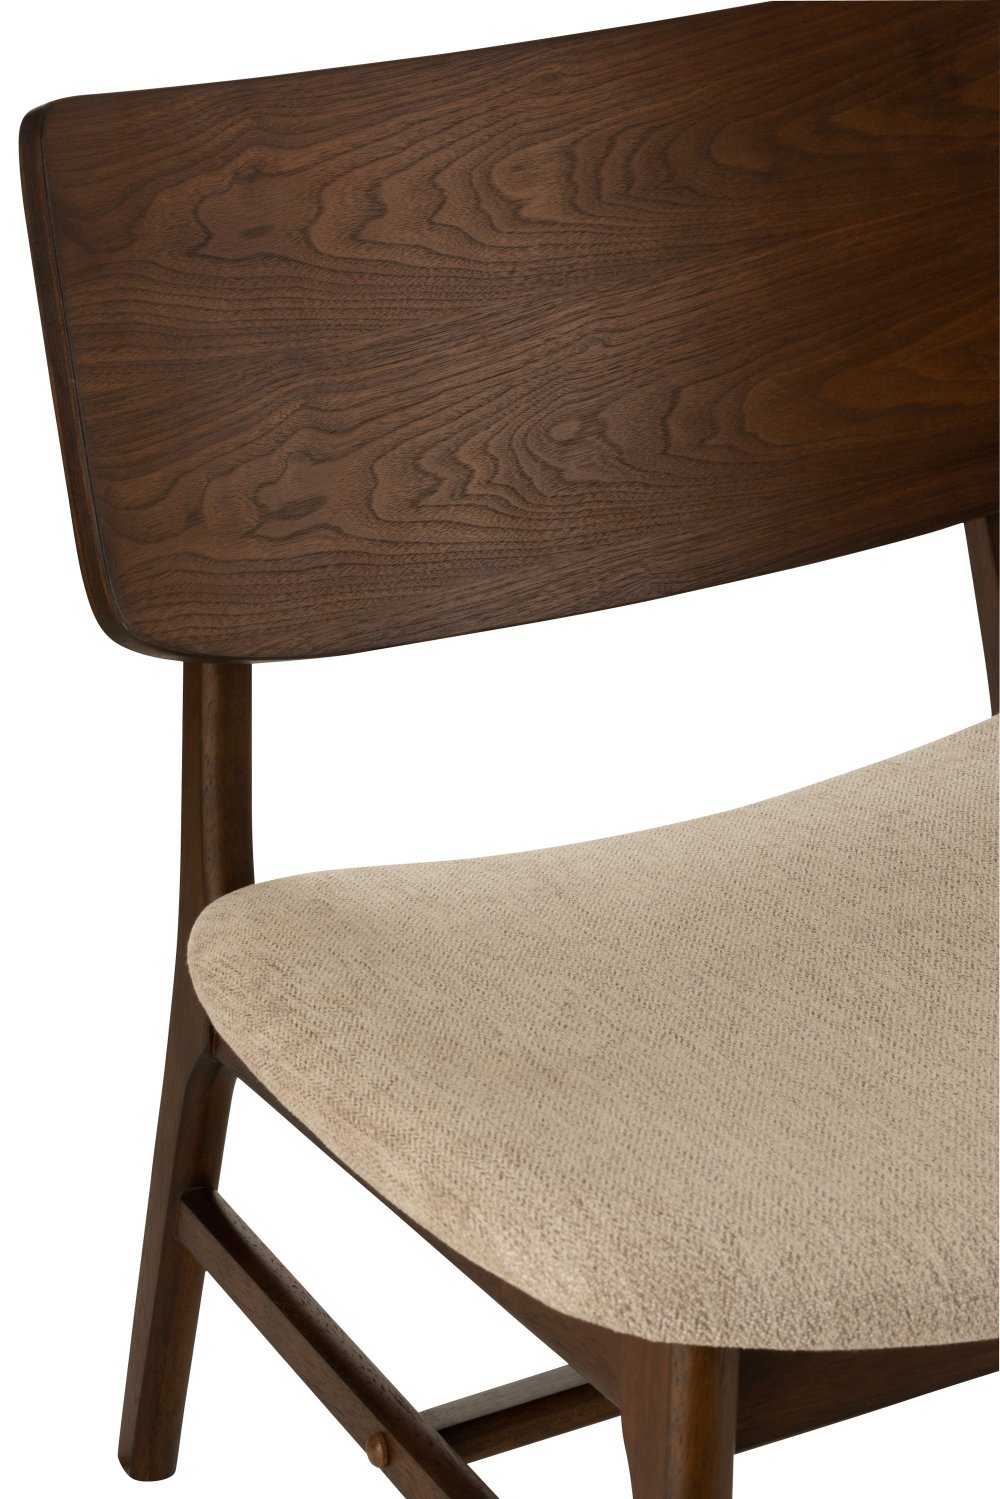 Chaise lounge vintage KENU brun et beige en bois hévéa.